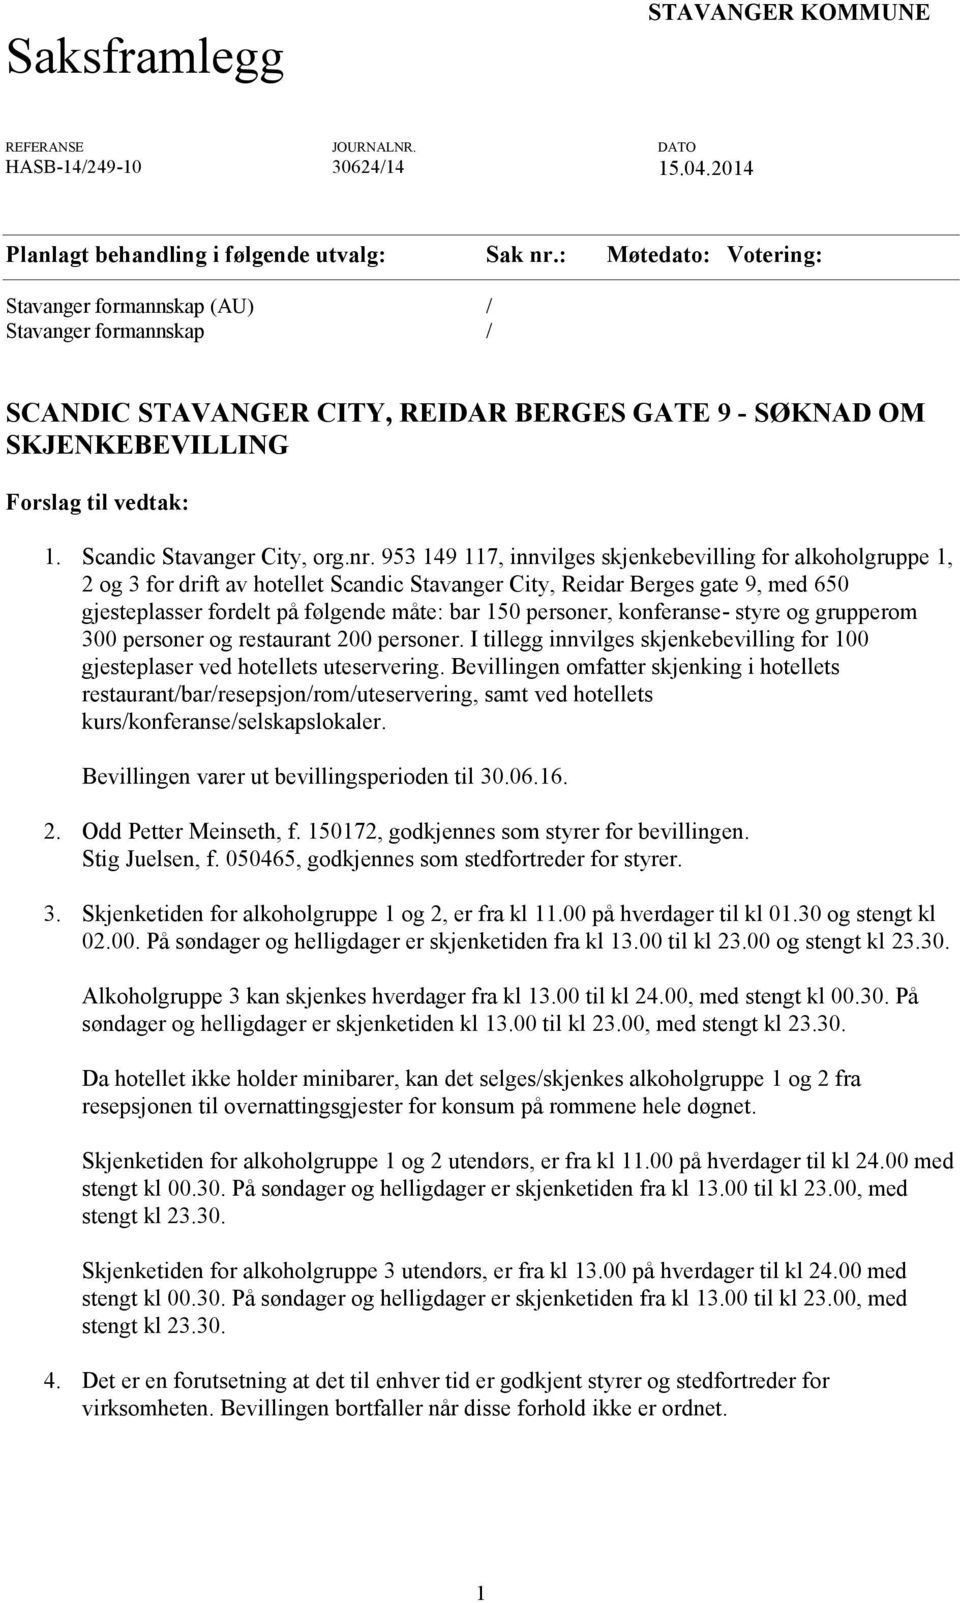 nr. 953 149 117, innvilges skjenkebevilling for alkoholgruppe 1, 2 og 3 for drift av hotellet Scandic Stavanger City, Reidar Berges gate 9, med 650 gjesteplasser fordelt på følgende måte: bar 150